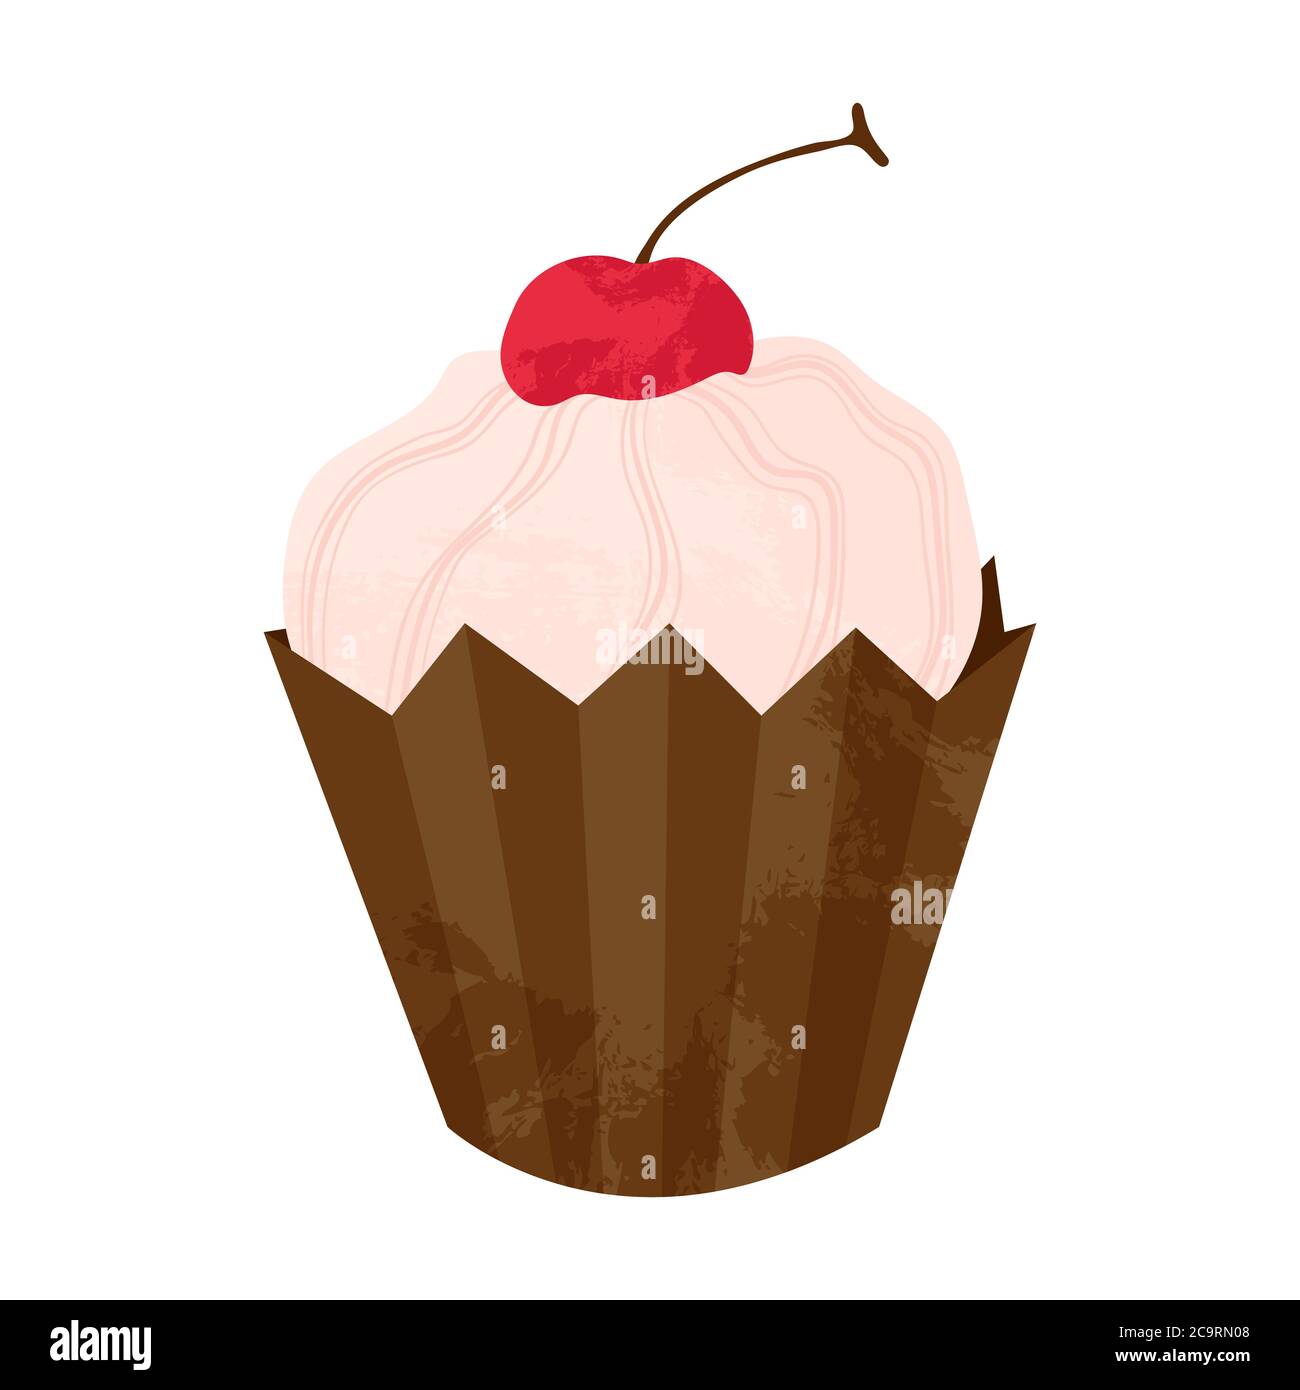 Einhandgezogener Cupcake oder Muffin mit Kirsche und Schlagsahne. Vektor-Cartoon-Illustration in flachem Design. Element für Grußkarten, Poster, st Stock Vektor